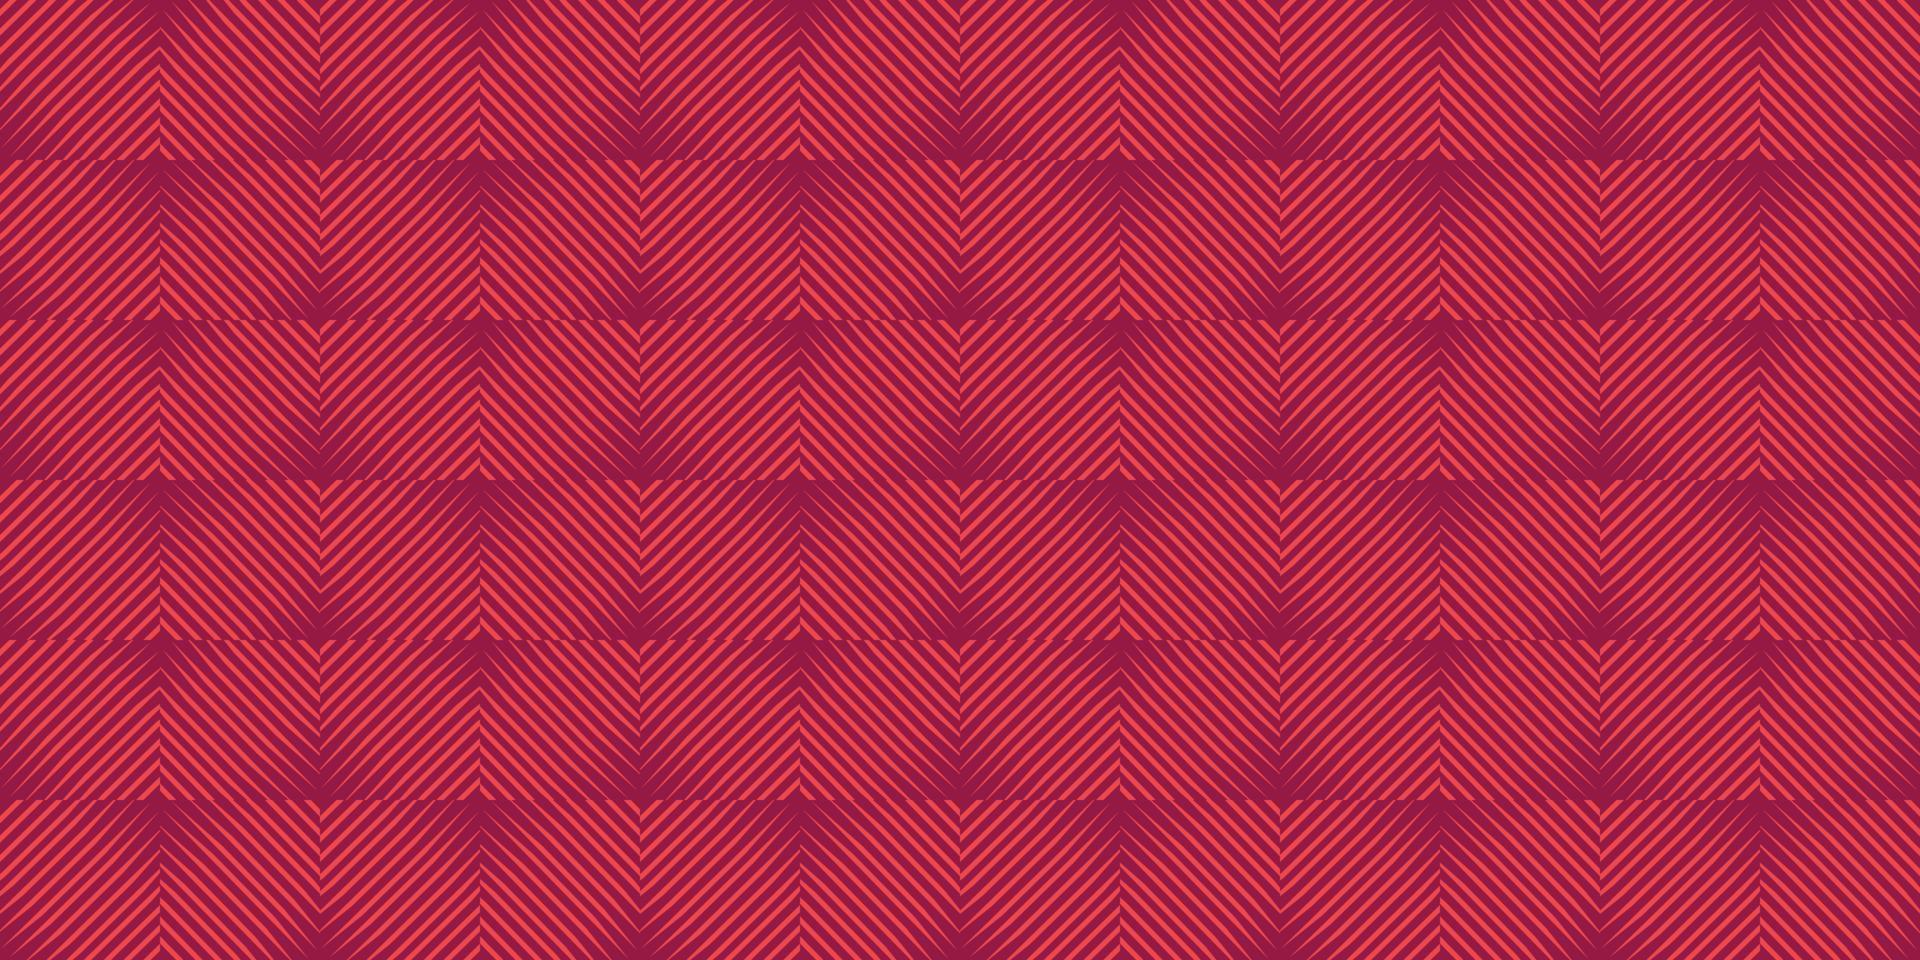 plädar tyg textil diagonala linjer texturmönster sömlös abstrakt bakgrund tapeter papper konst design vektorillustration vektor